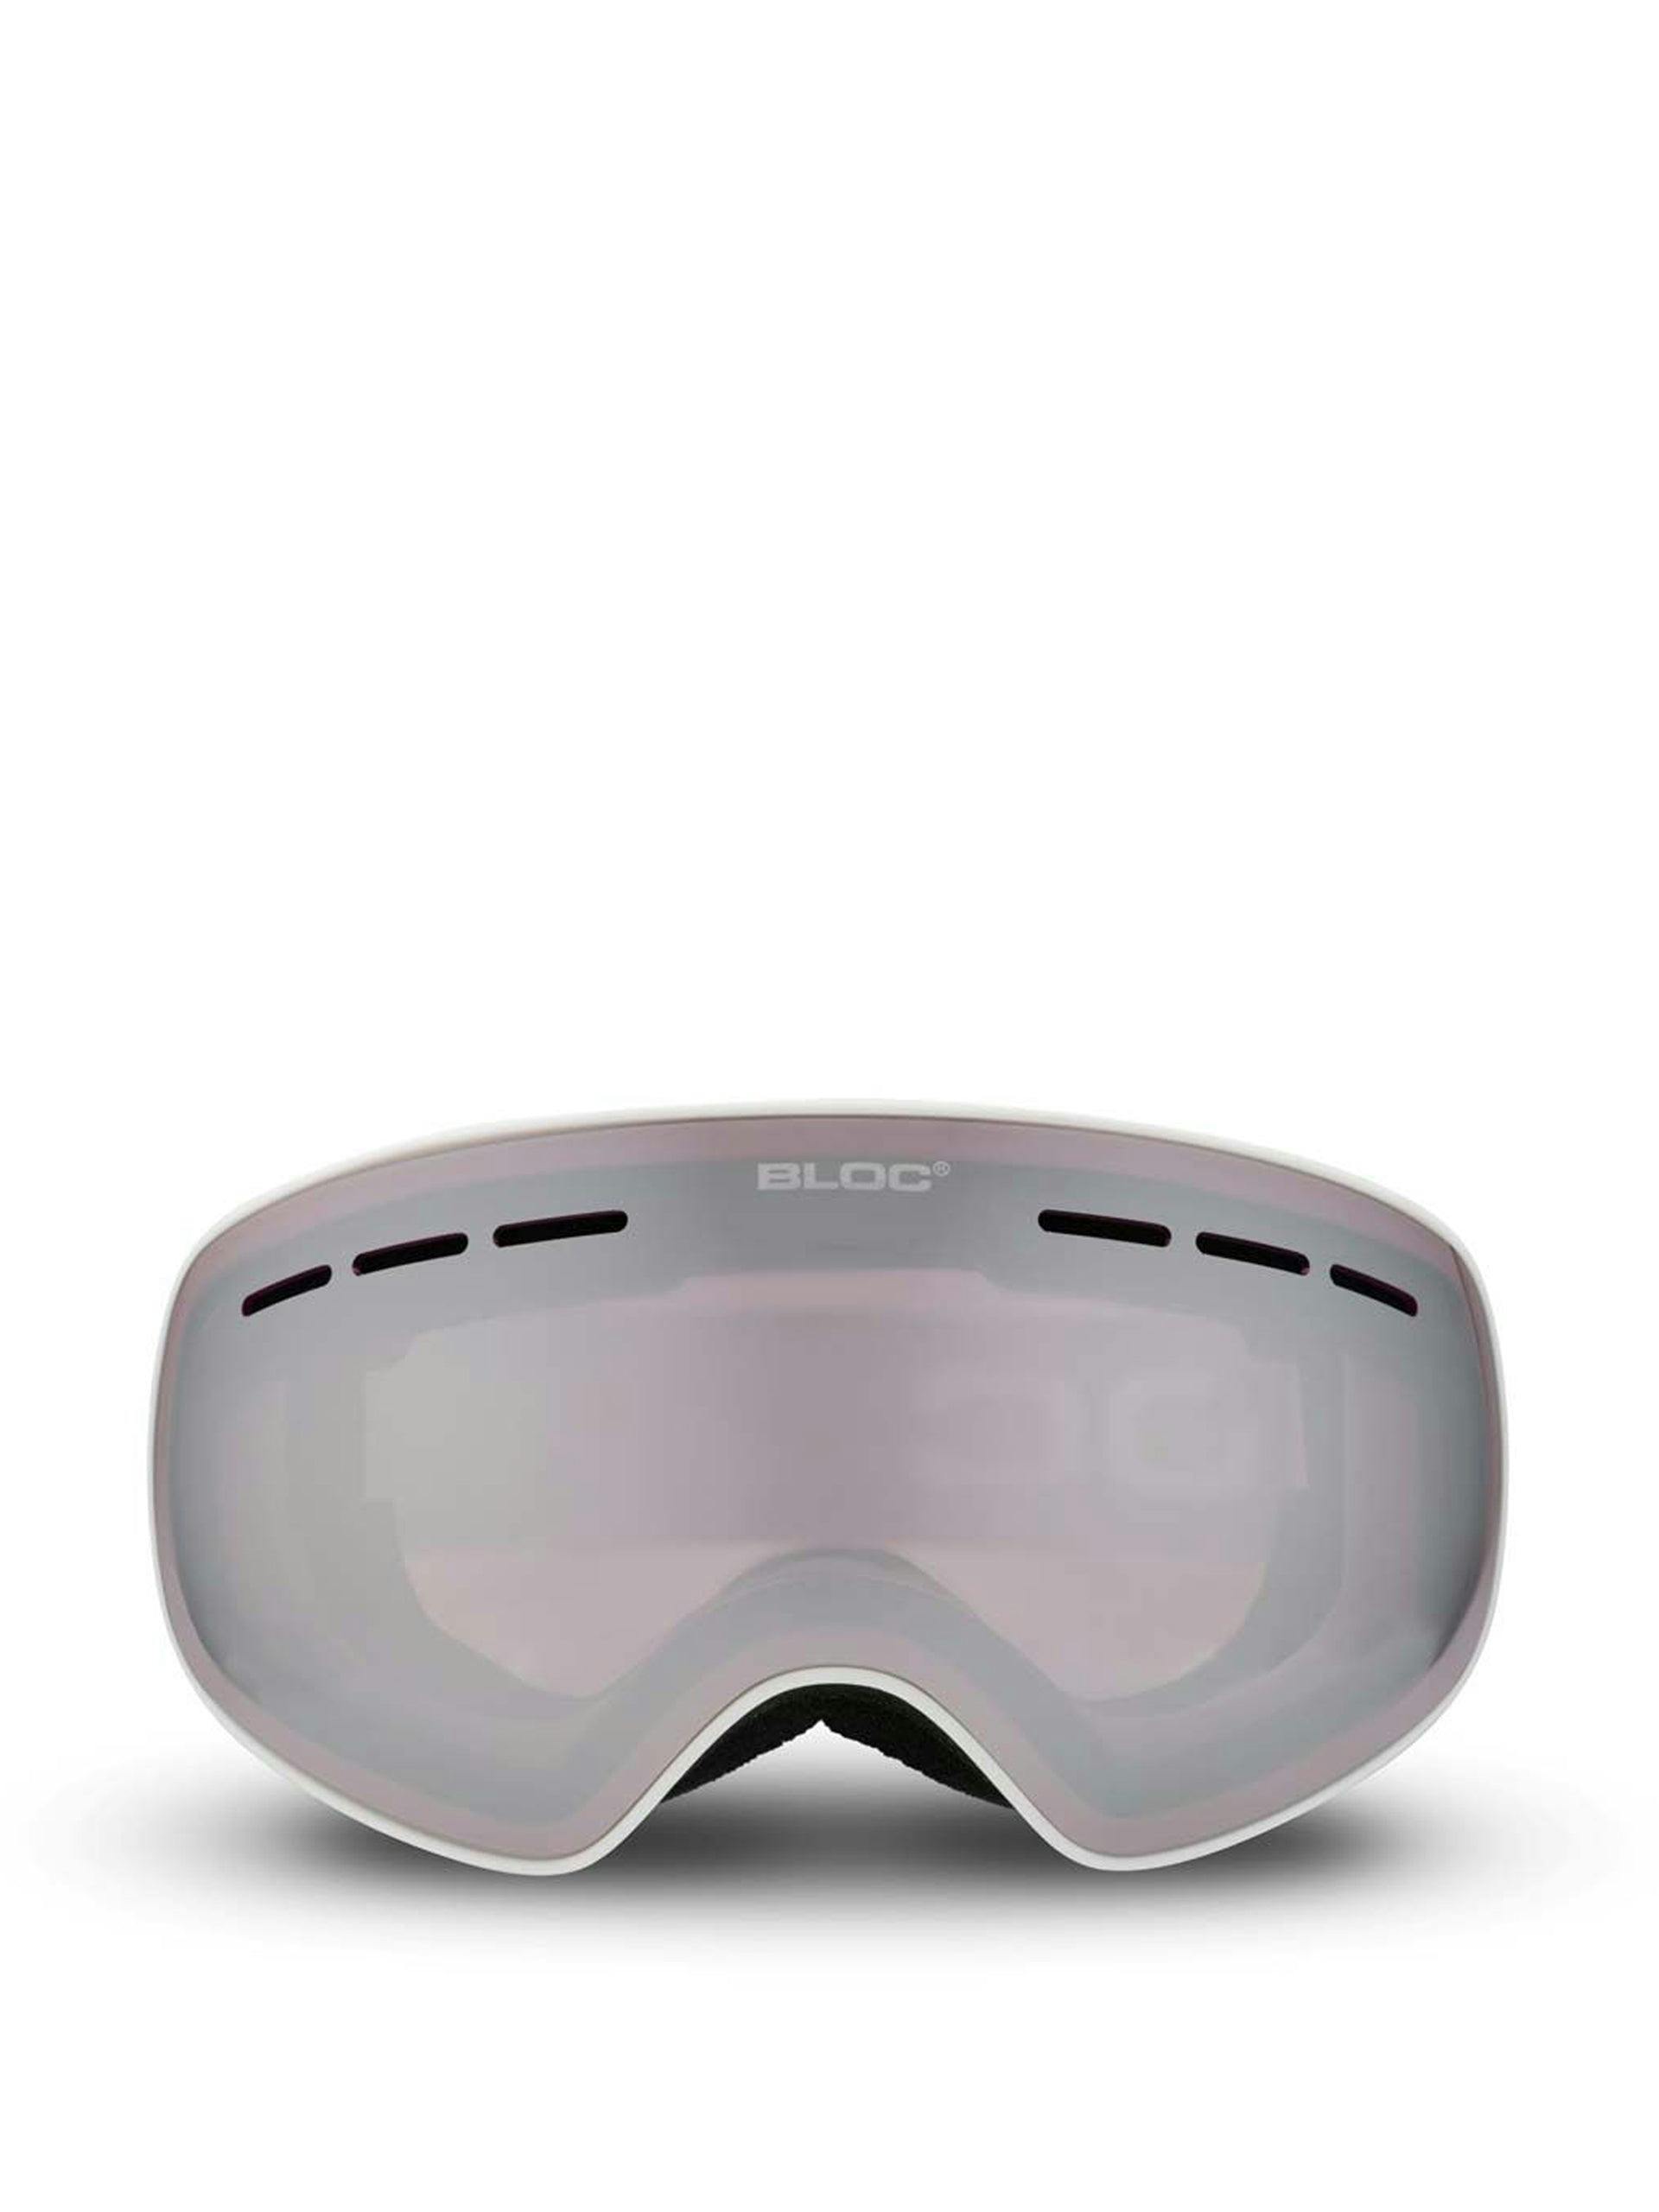 Moon ski goggles